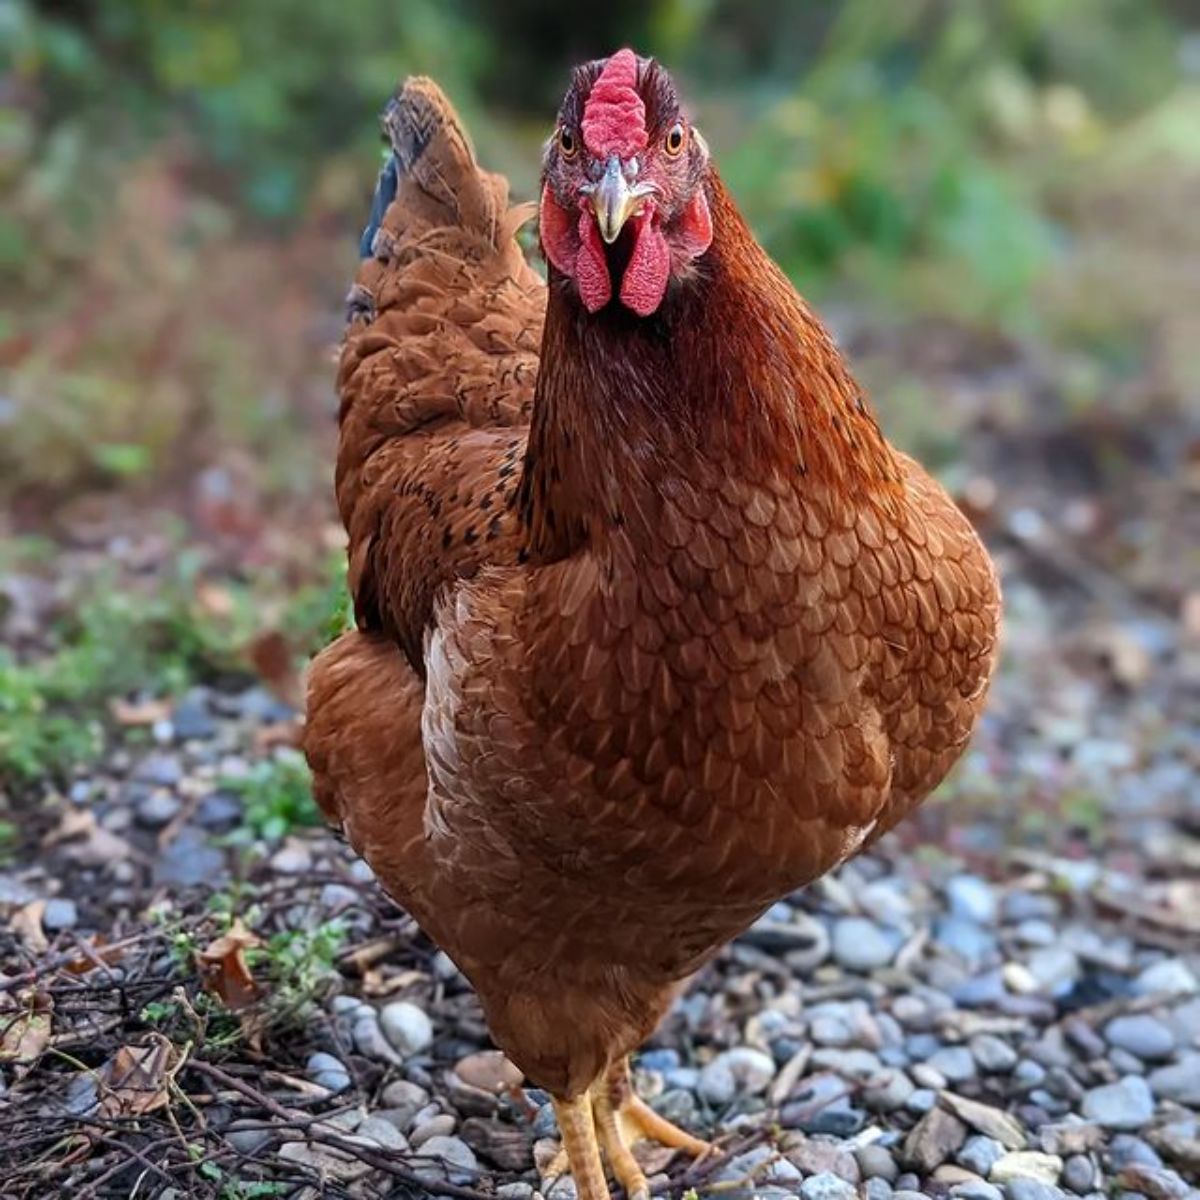 A beautiful Cinnamon Queen chicken looking into a camera.